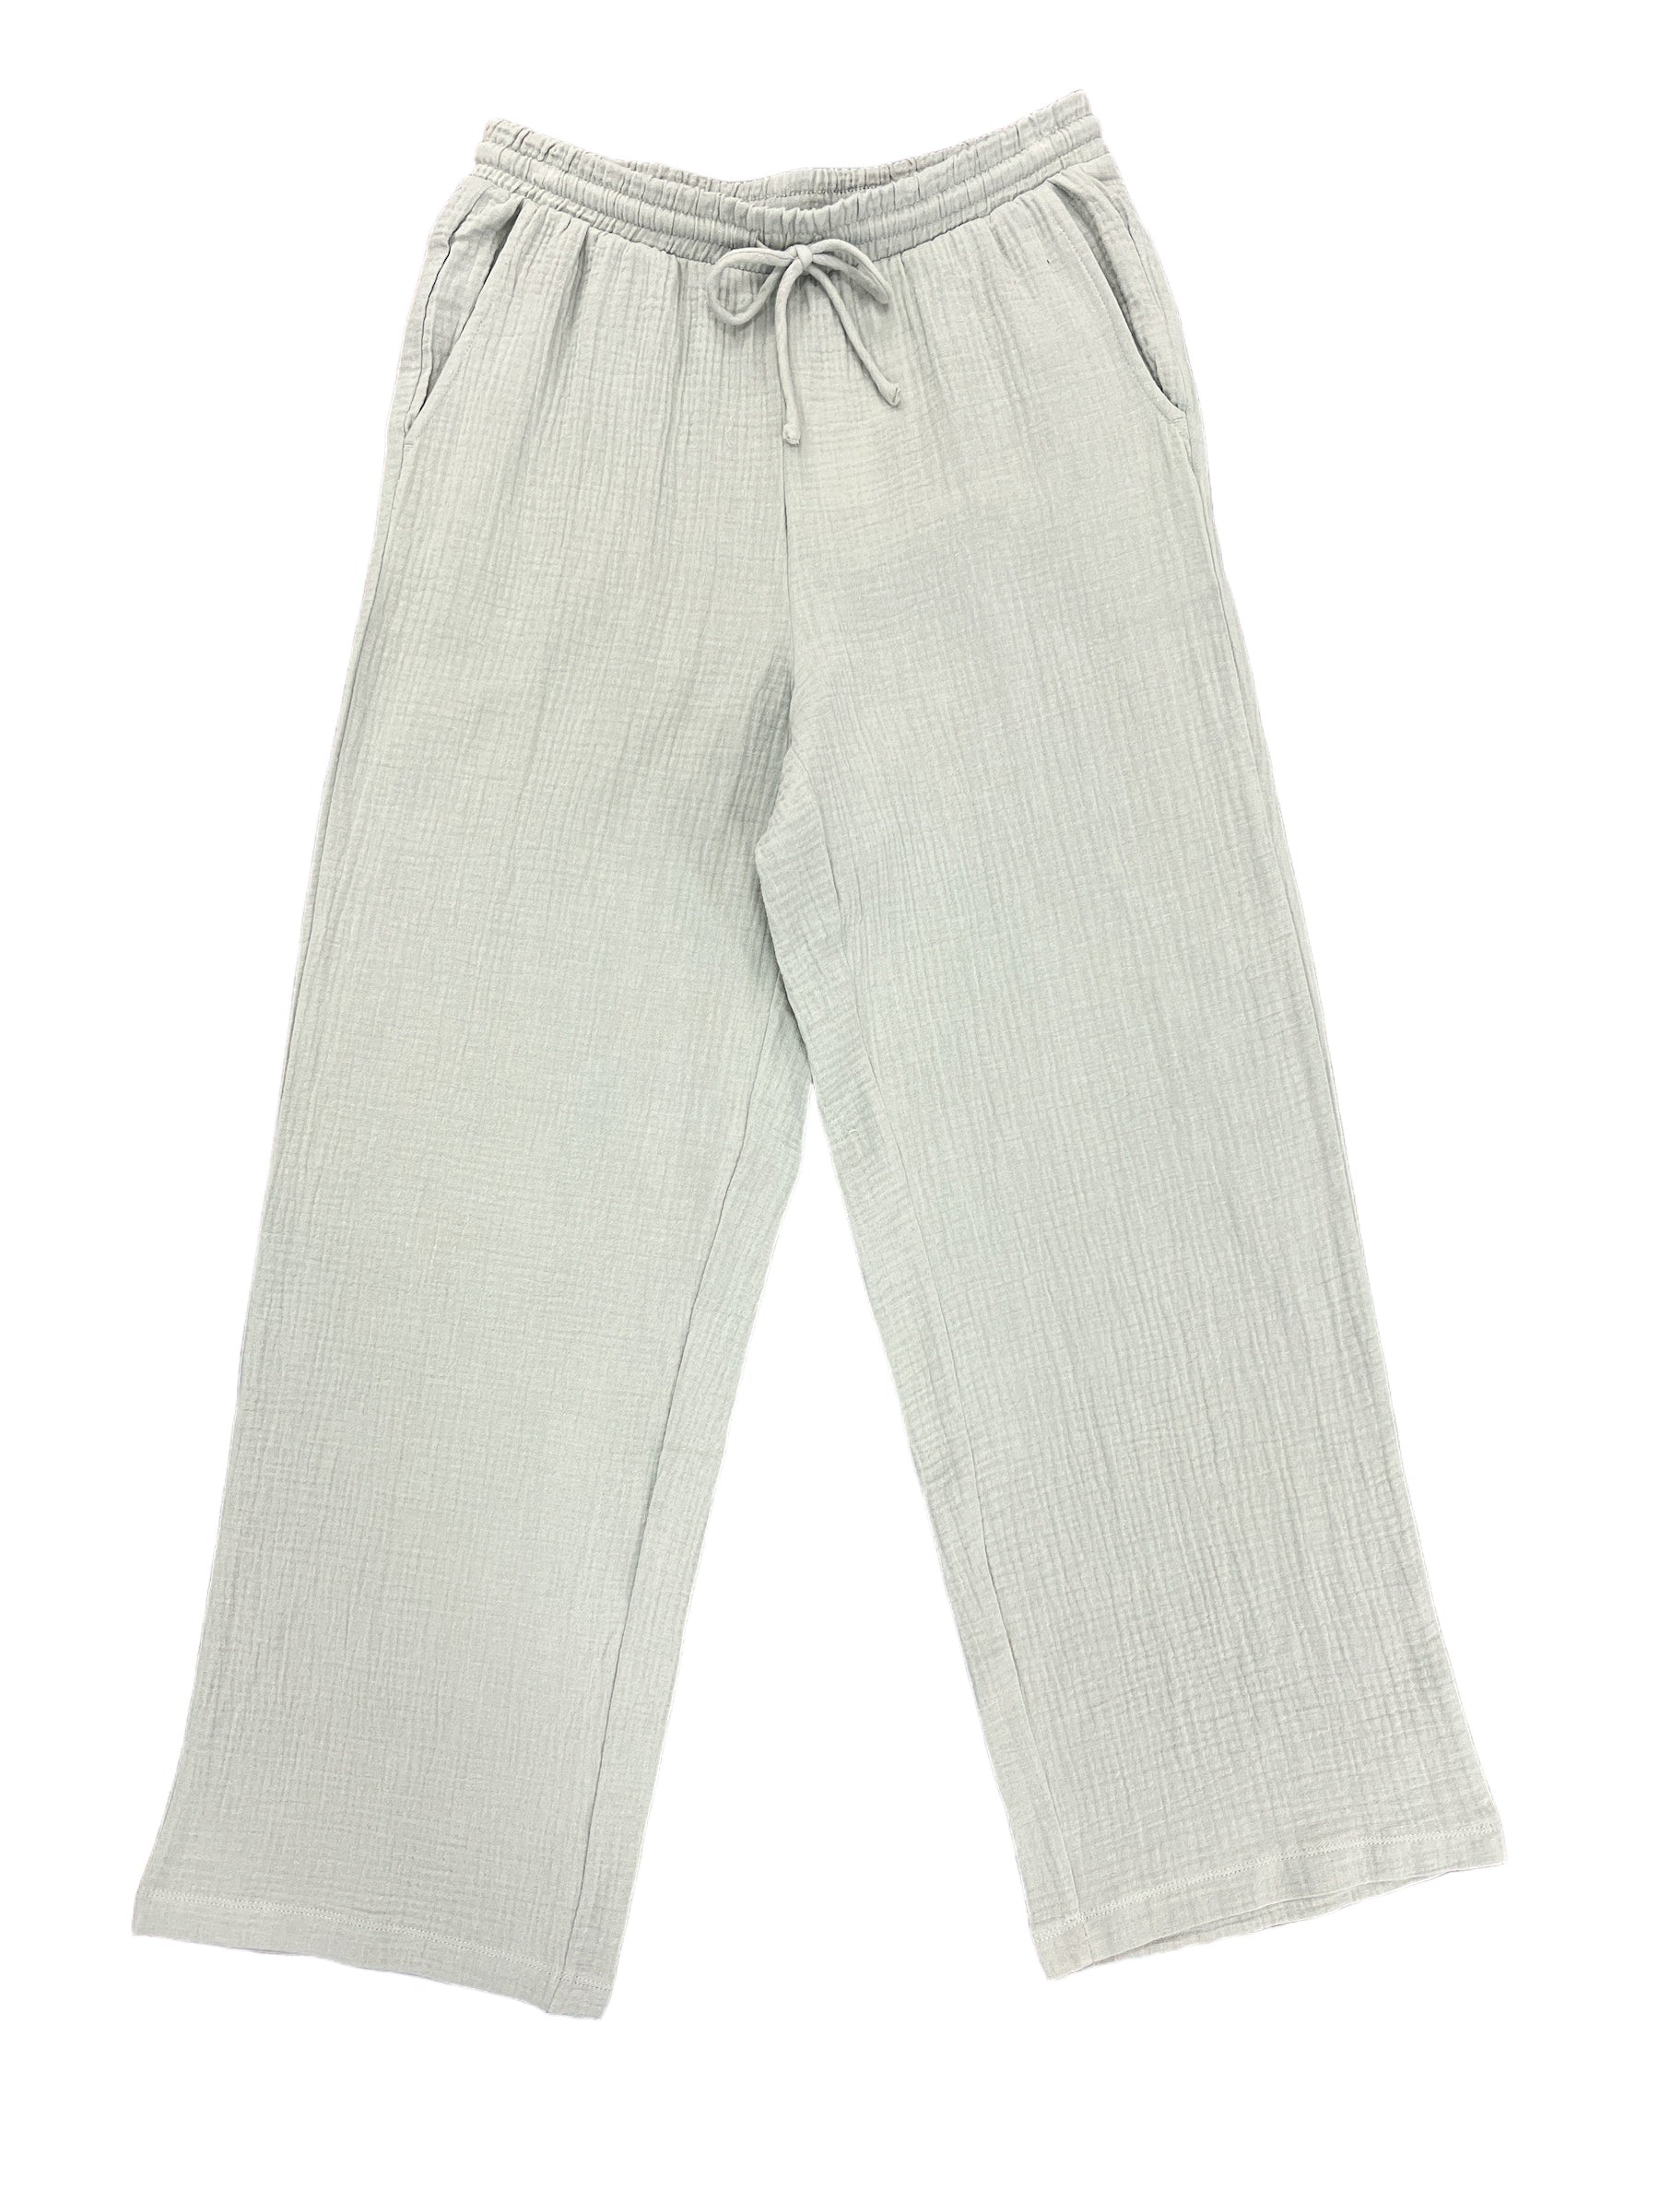 Bondi Pant-230 Pants-Z Supply-Simply Stylish Boutique | Women’s & Kid’s Fashion | Paducah, KY